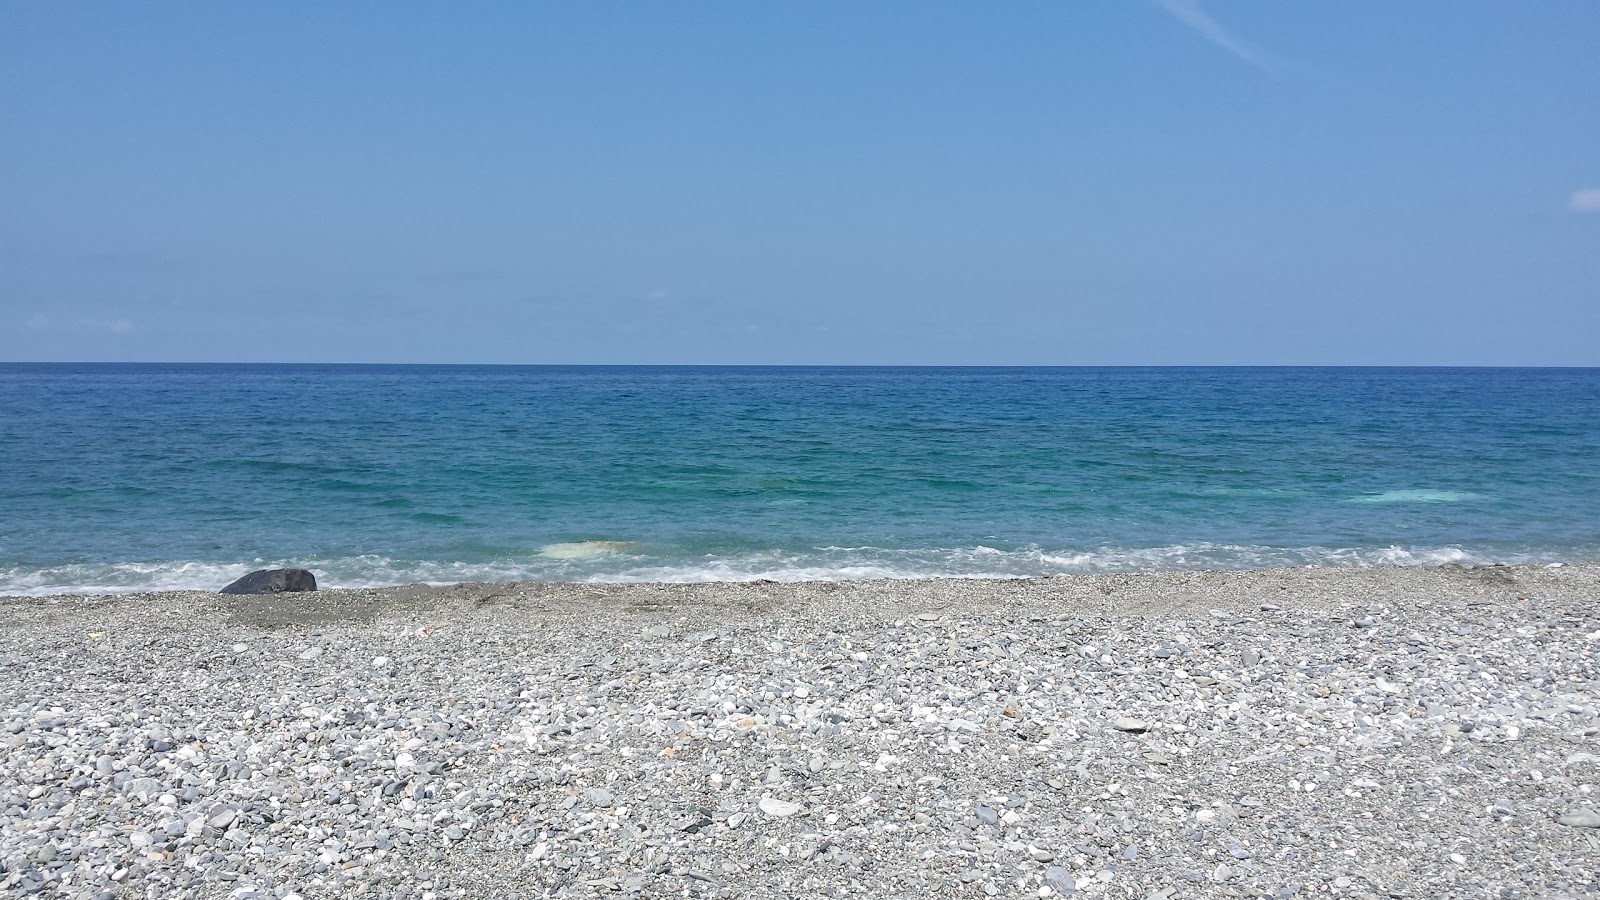 Foto van Spiaggia Amantea ondersteund door kliffen